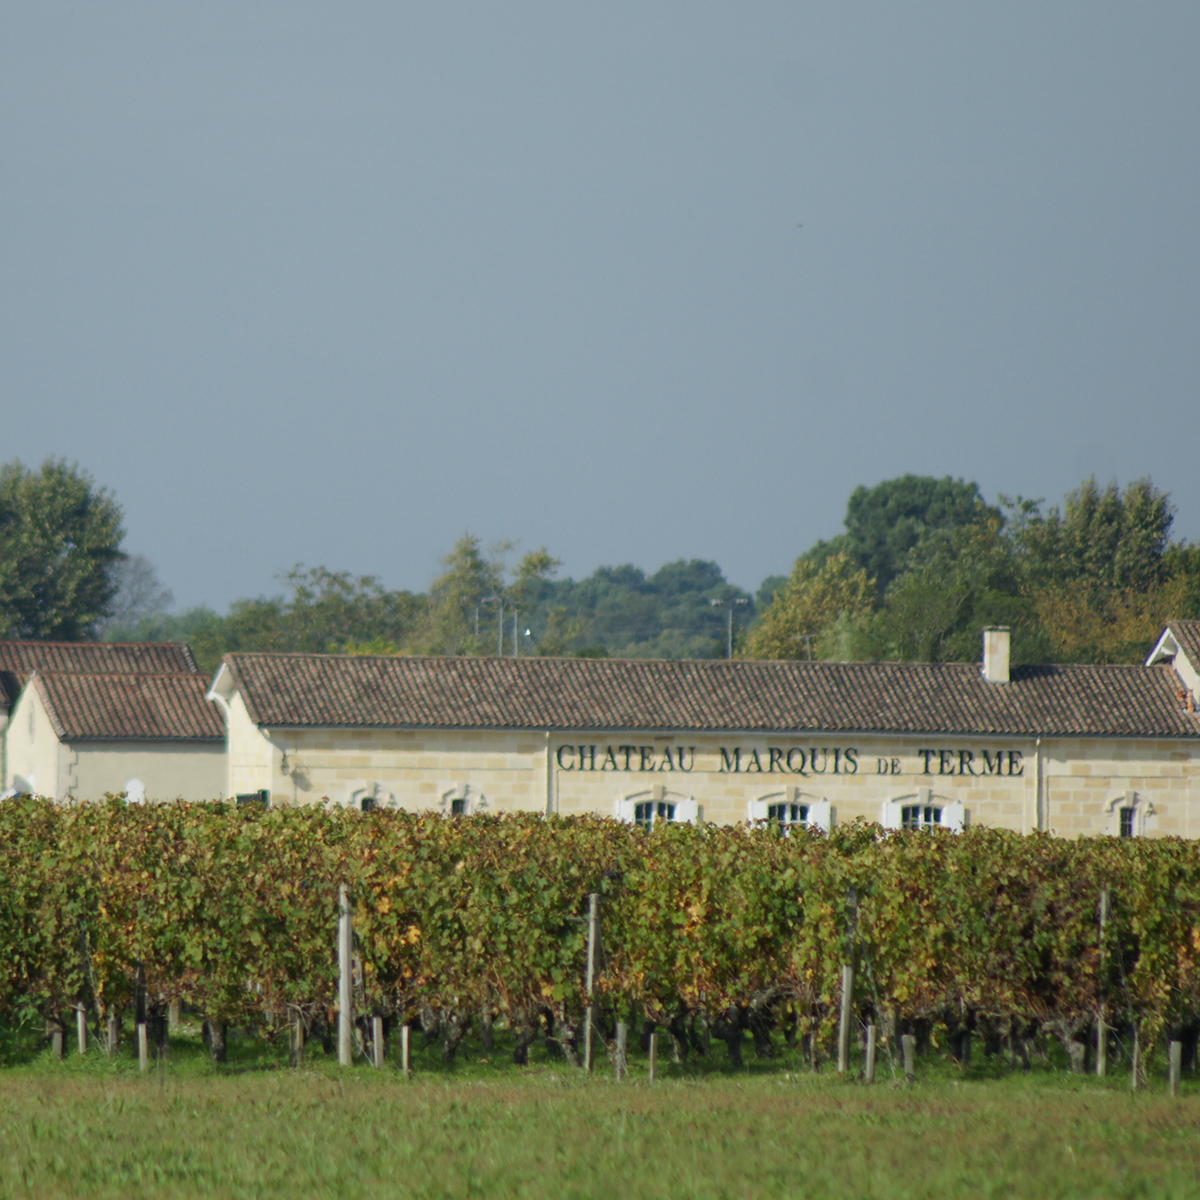 2001 Chateau Marquis de Terme 🍷 Antikwein - Weinraritäten online kaufen